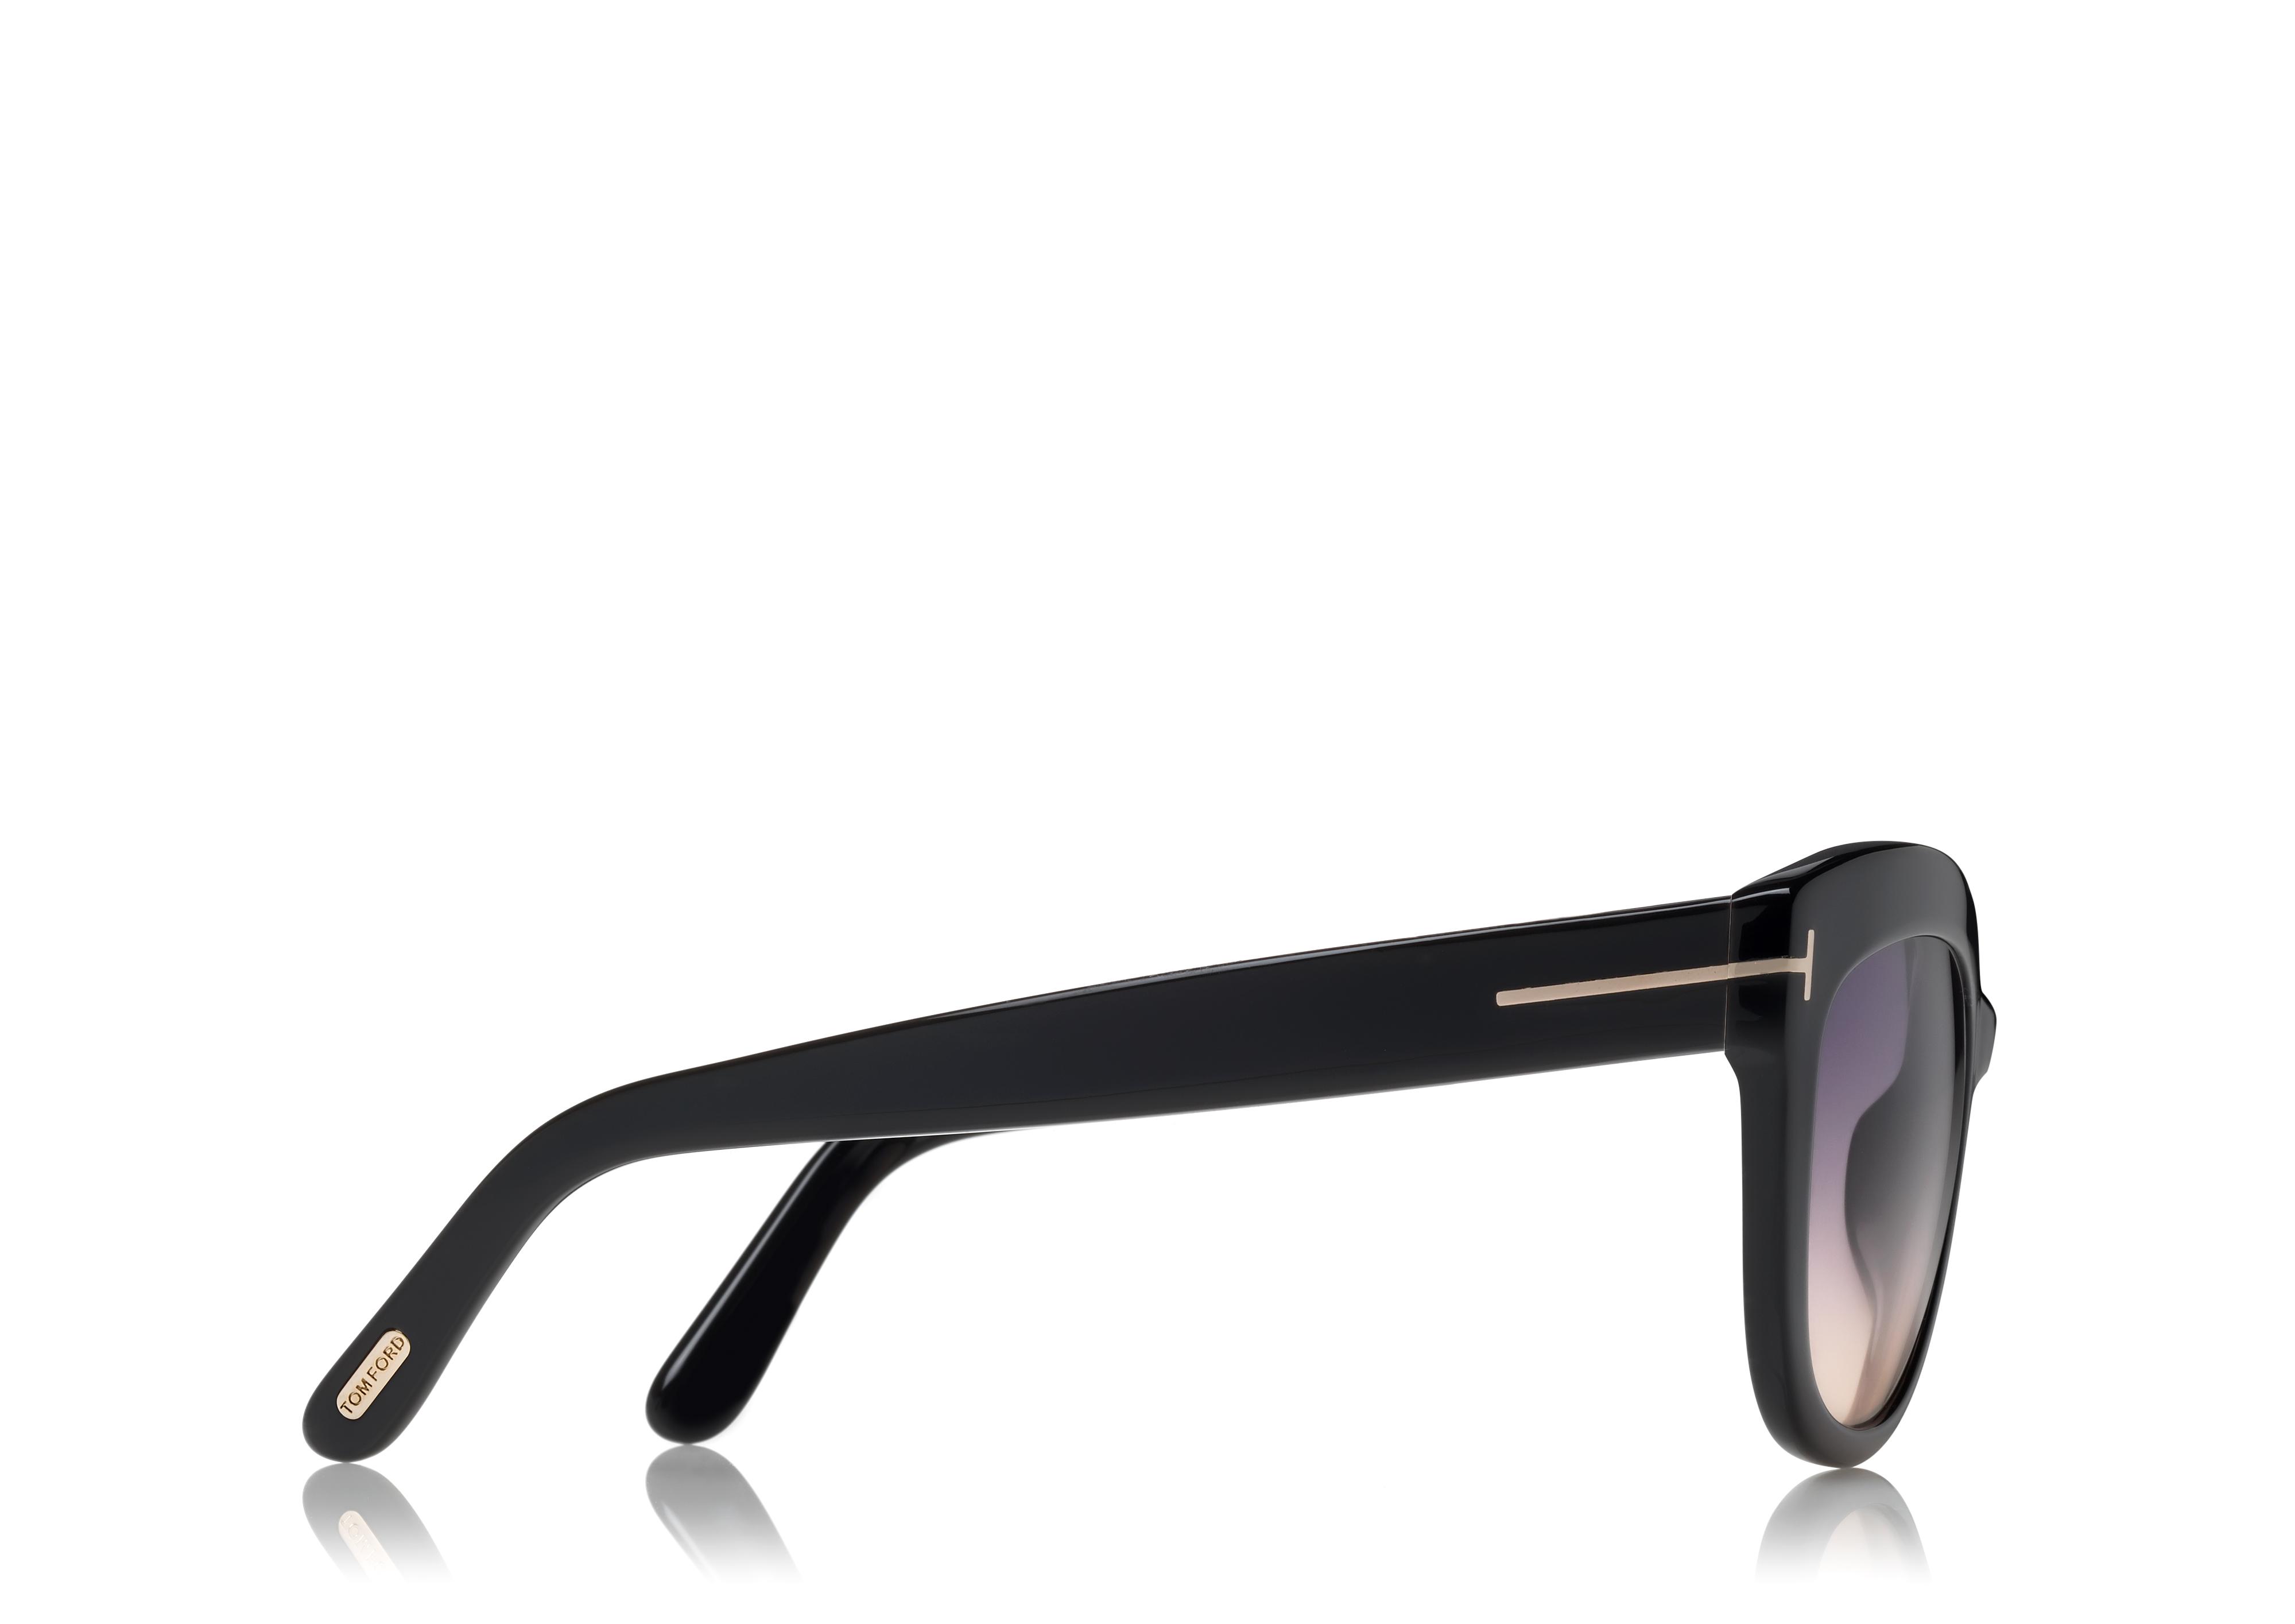 Sunglasses Tom Ford FT 0524 Alistair 01B shiny black/gradient smoke 